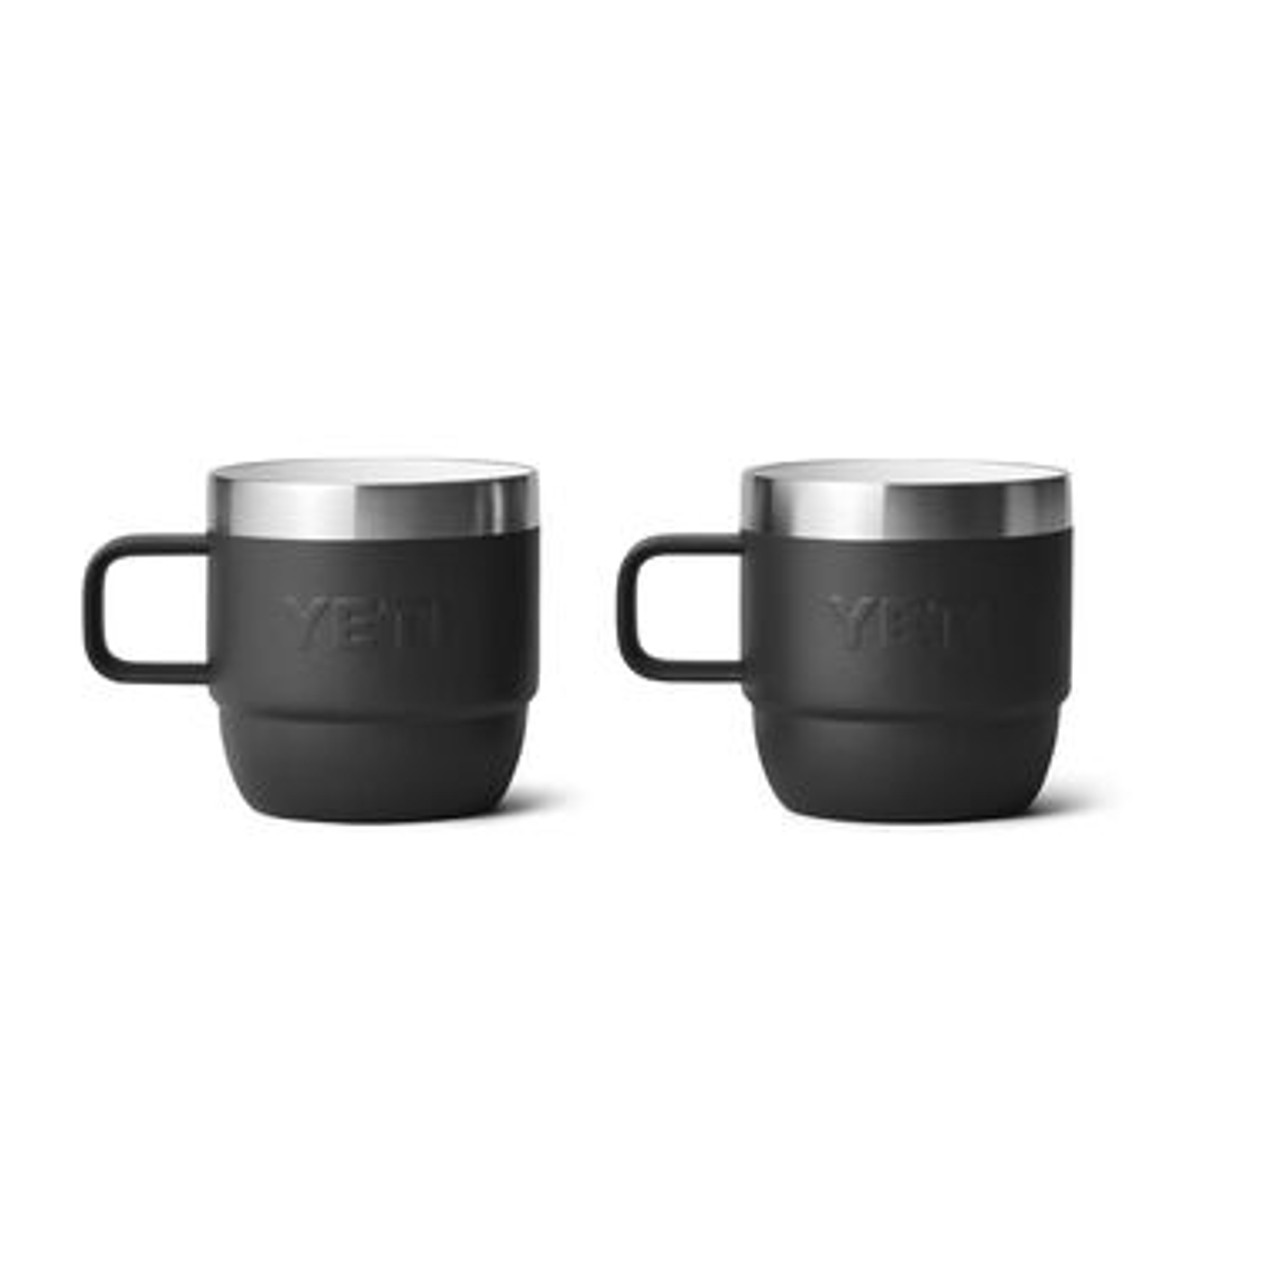 Cappuccino Mug (6oz) - Set of 2